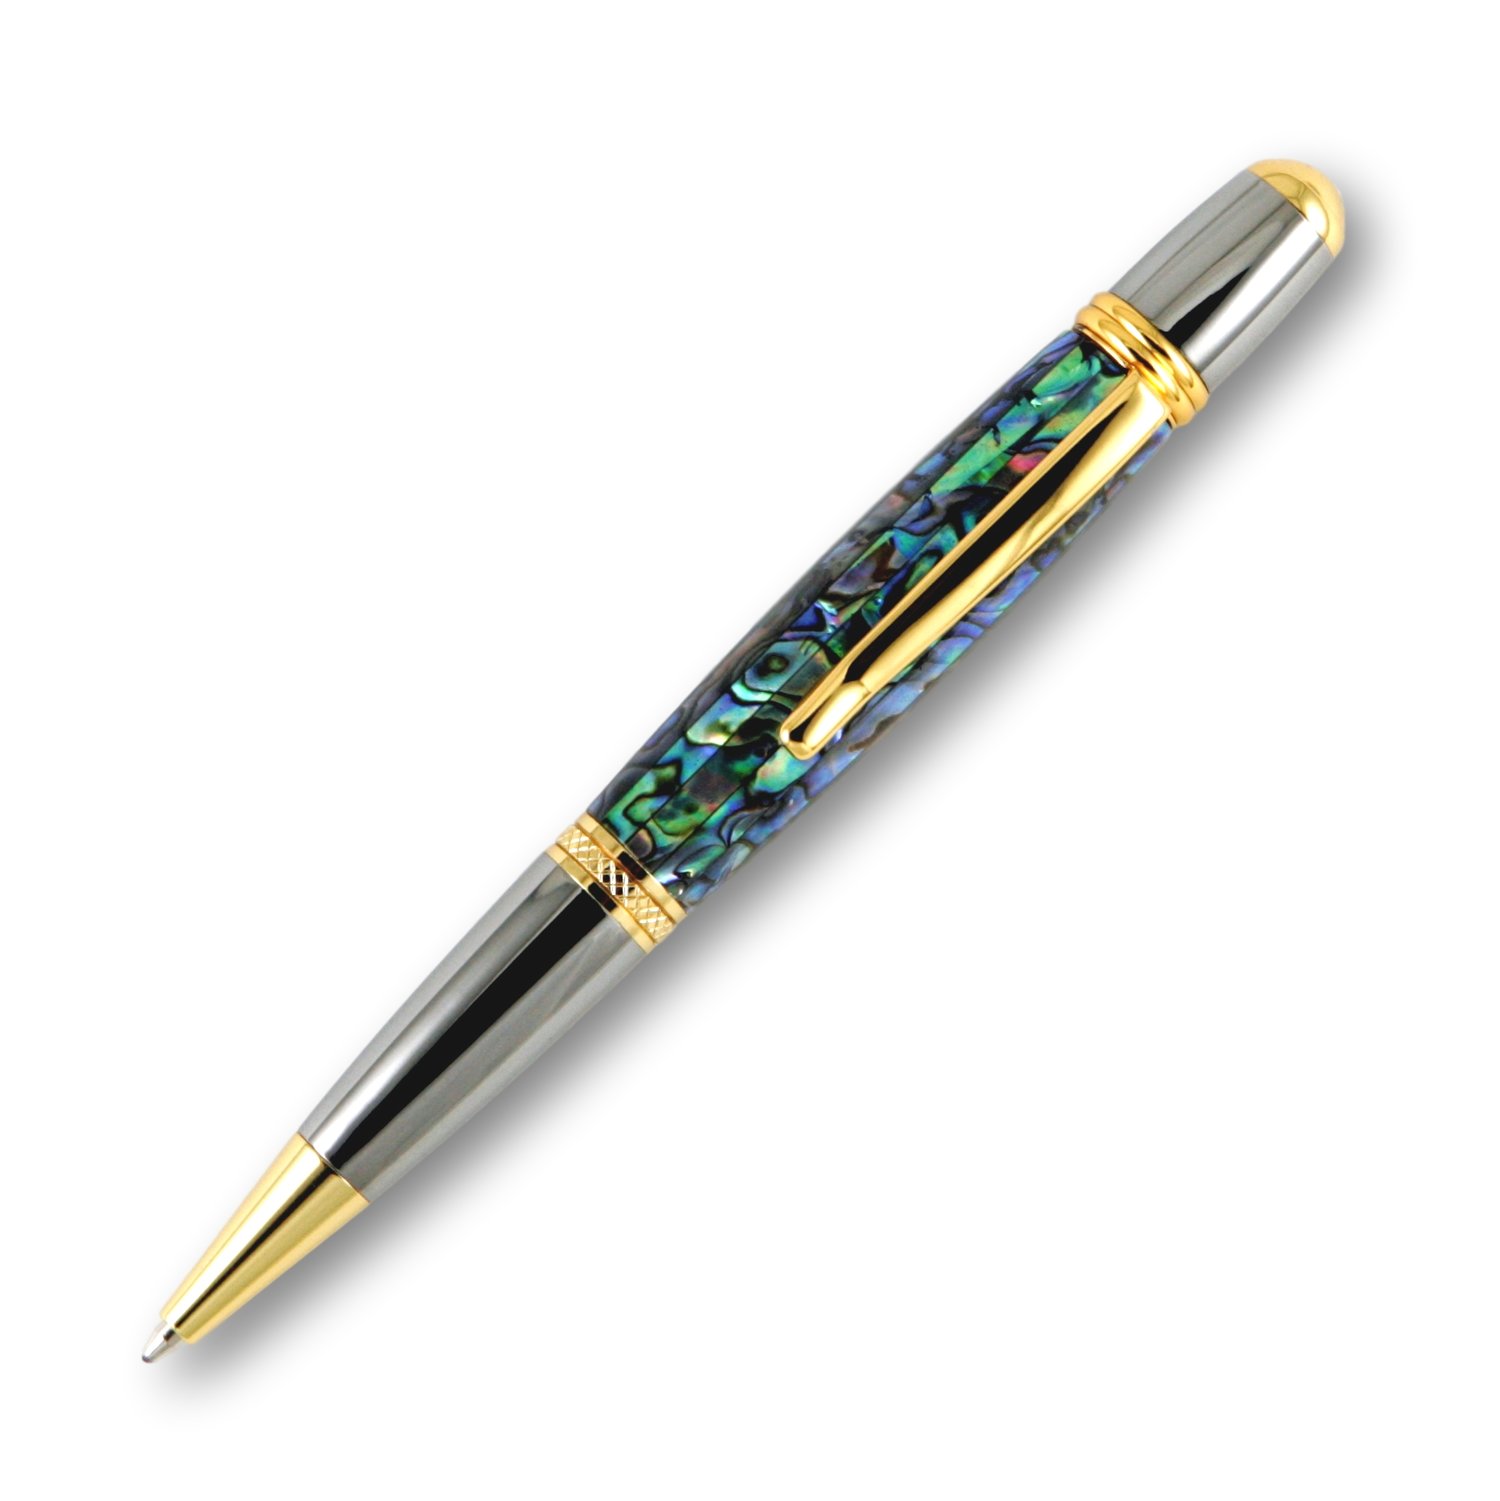 Sierra style ballpoint twist pen